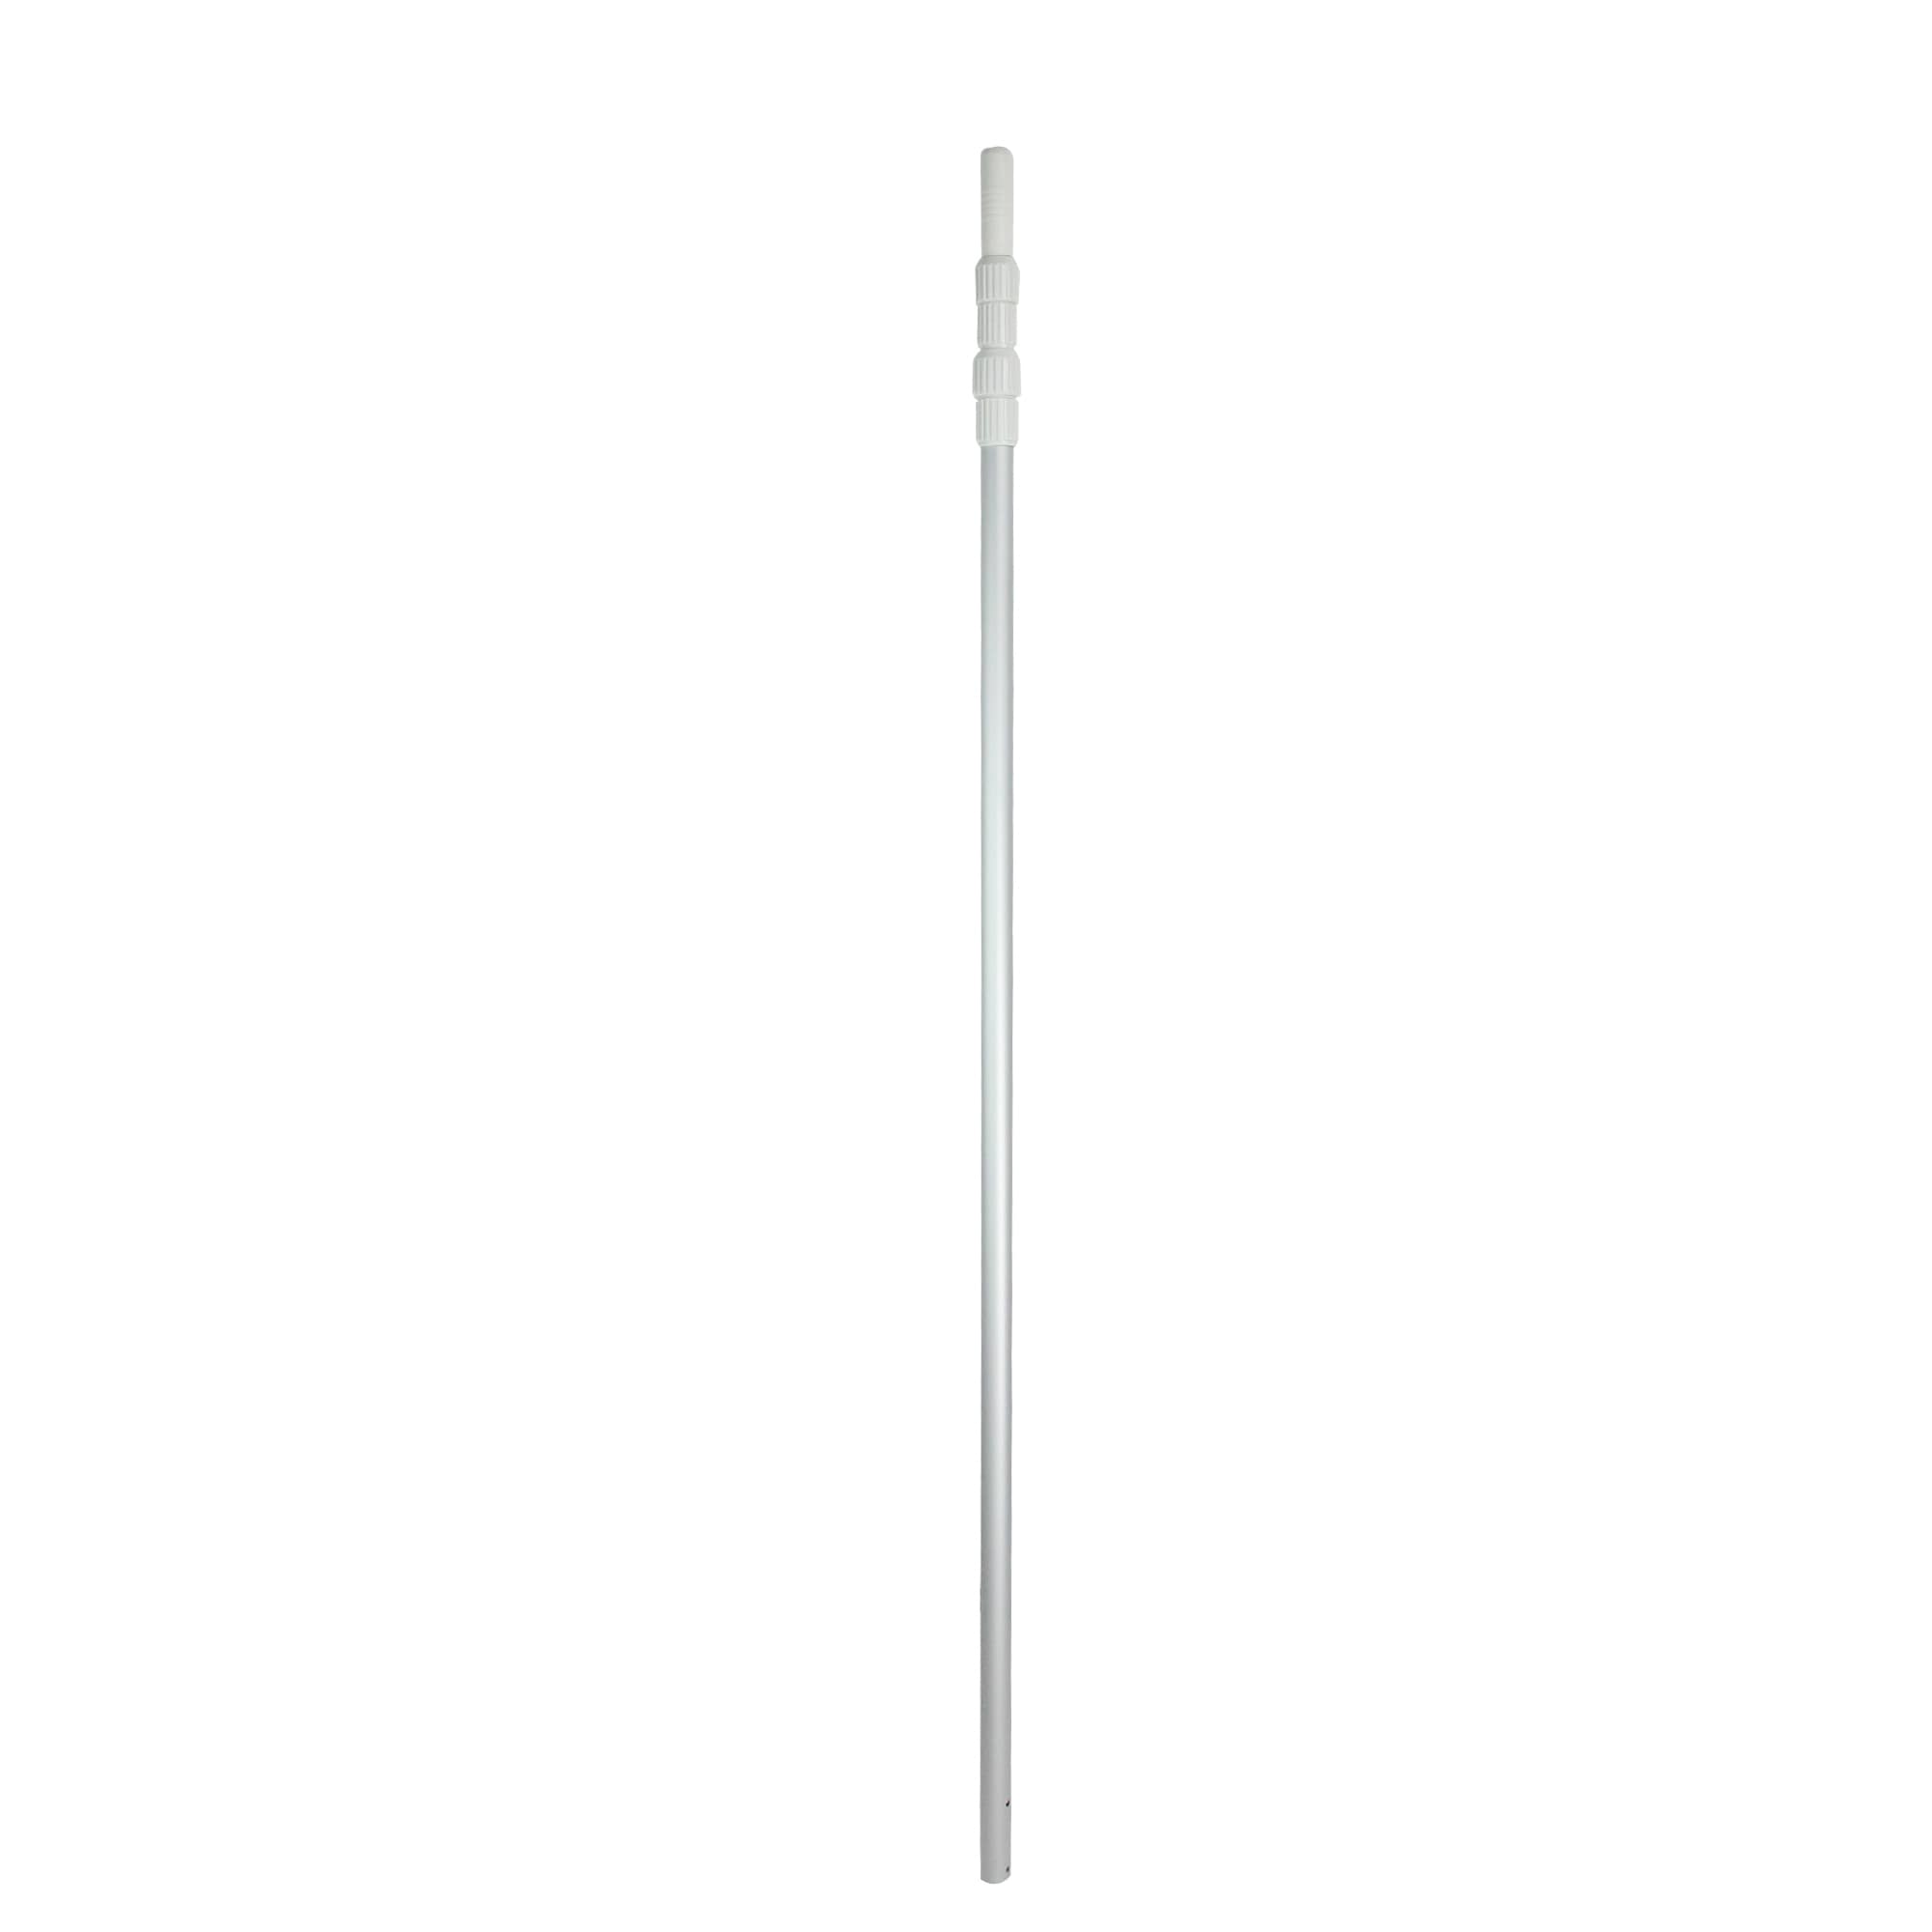 ELODEA Pro Series 3-Piece Telescopic Pool Pole, Aluminum, 5-15